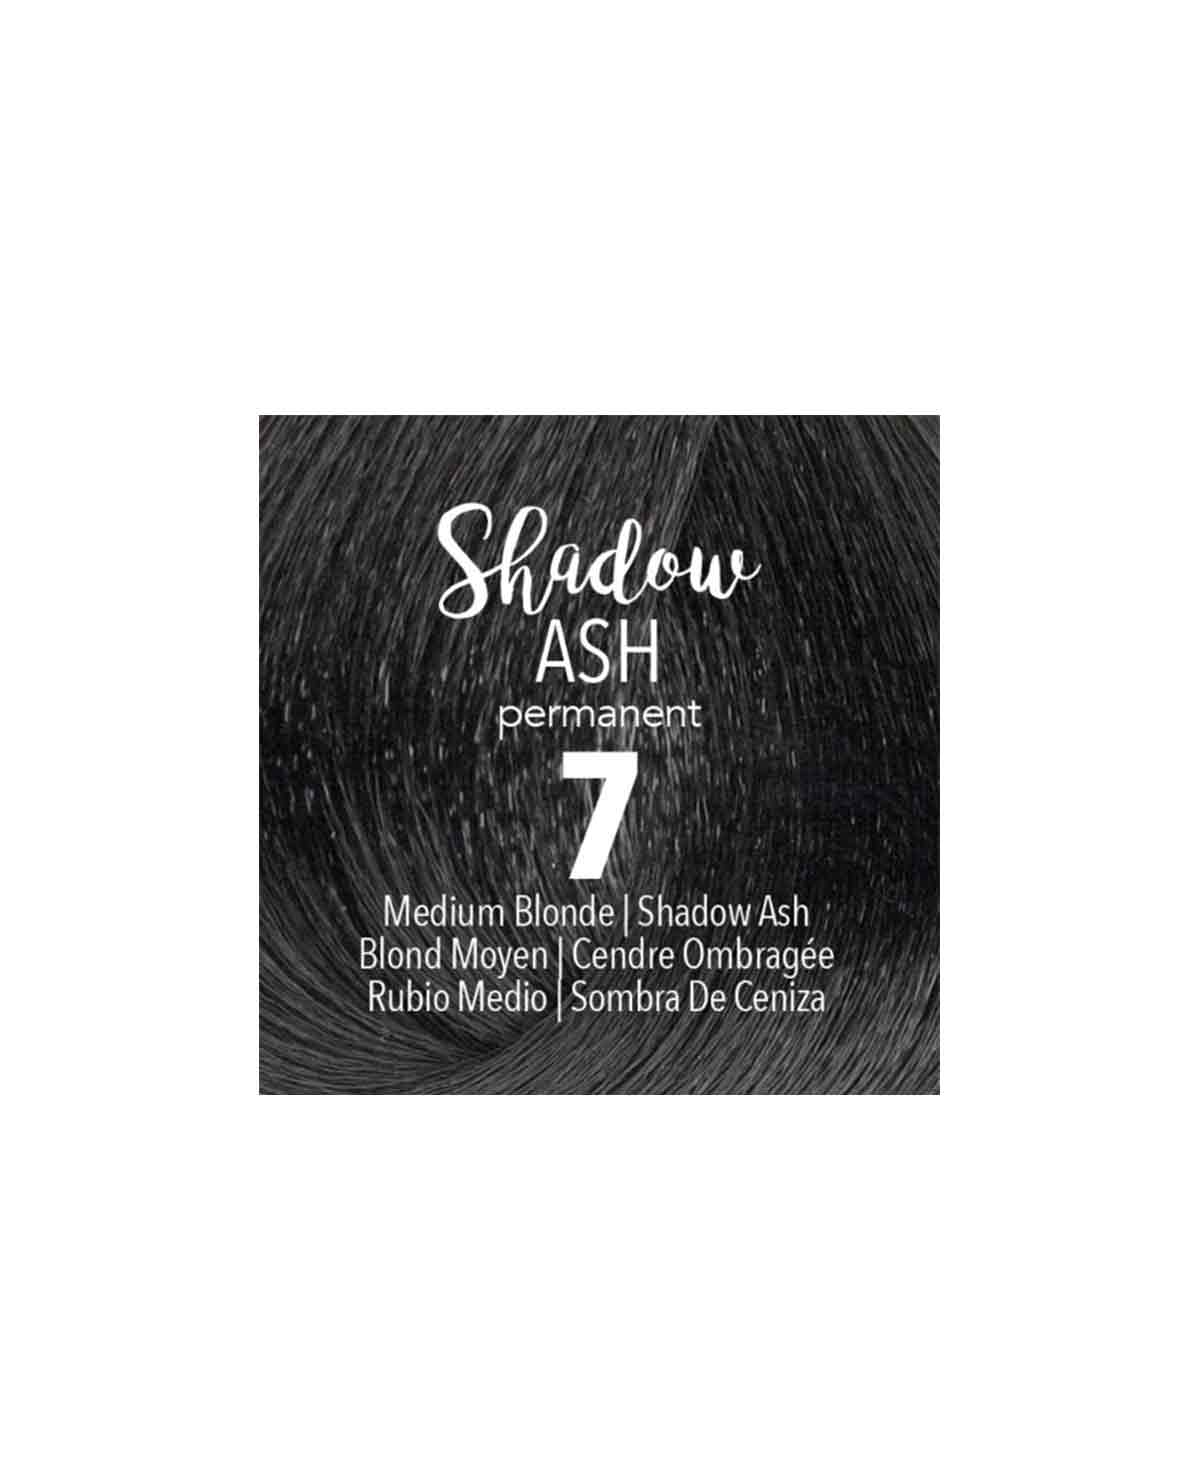 Mydentity - 7 Medium Blonde Shadow Ash